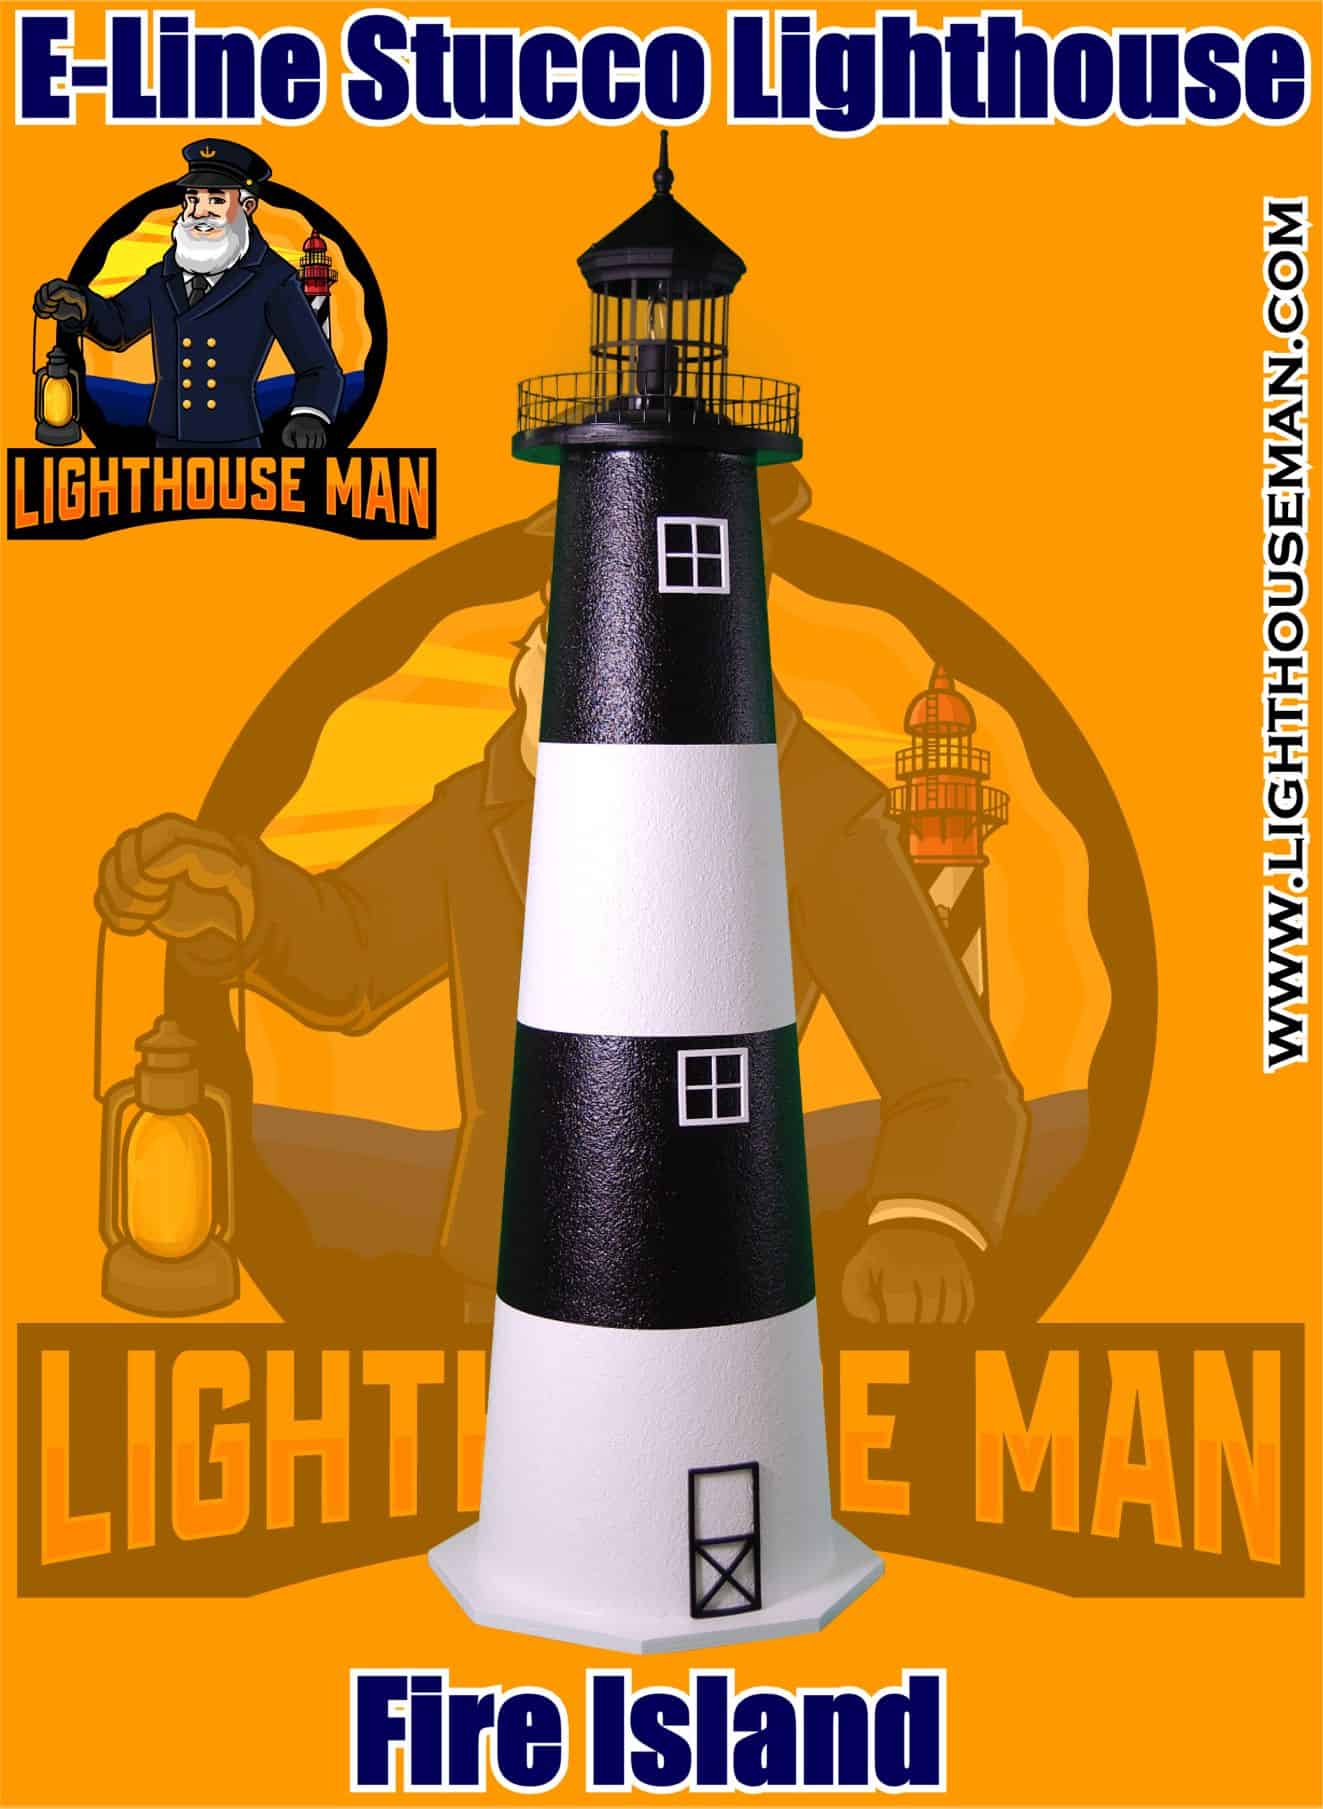 Fire Island E-line Stucco Lighthouse